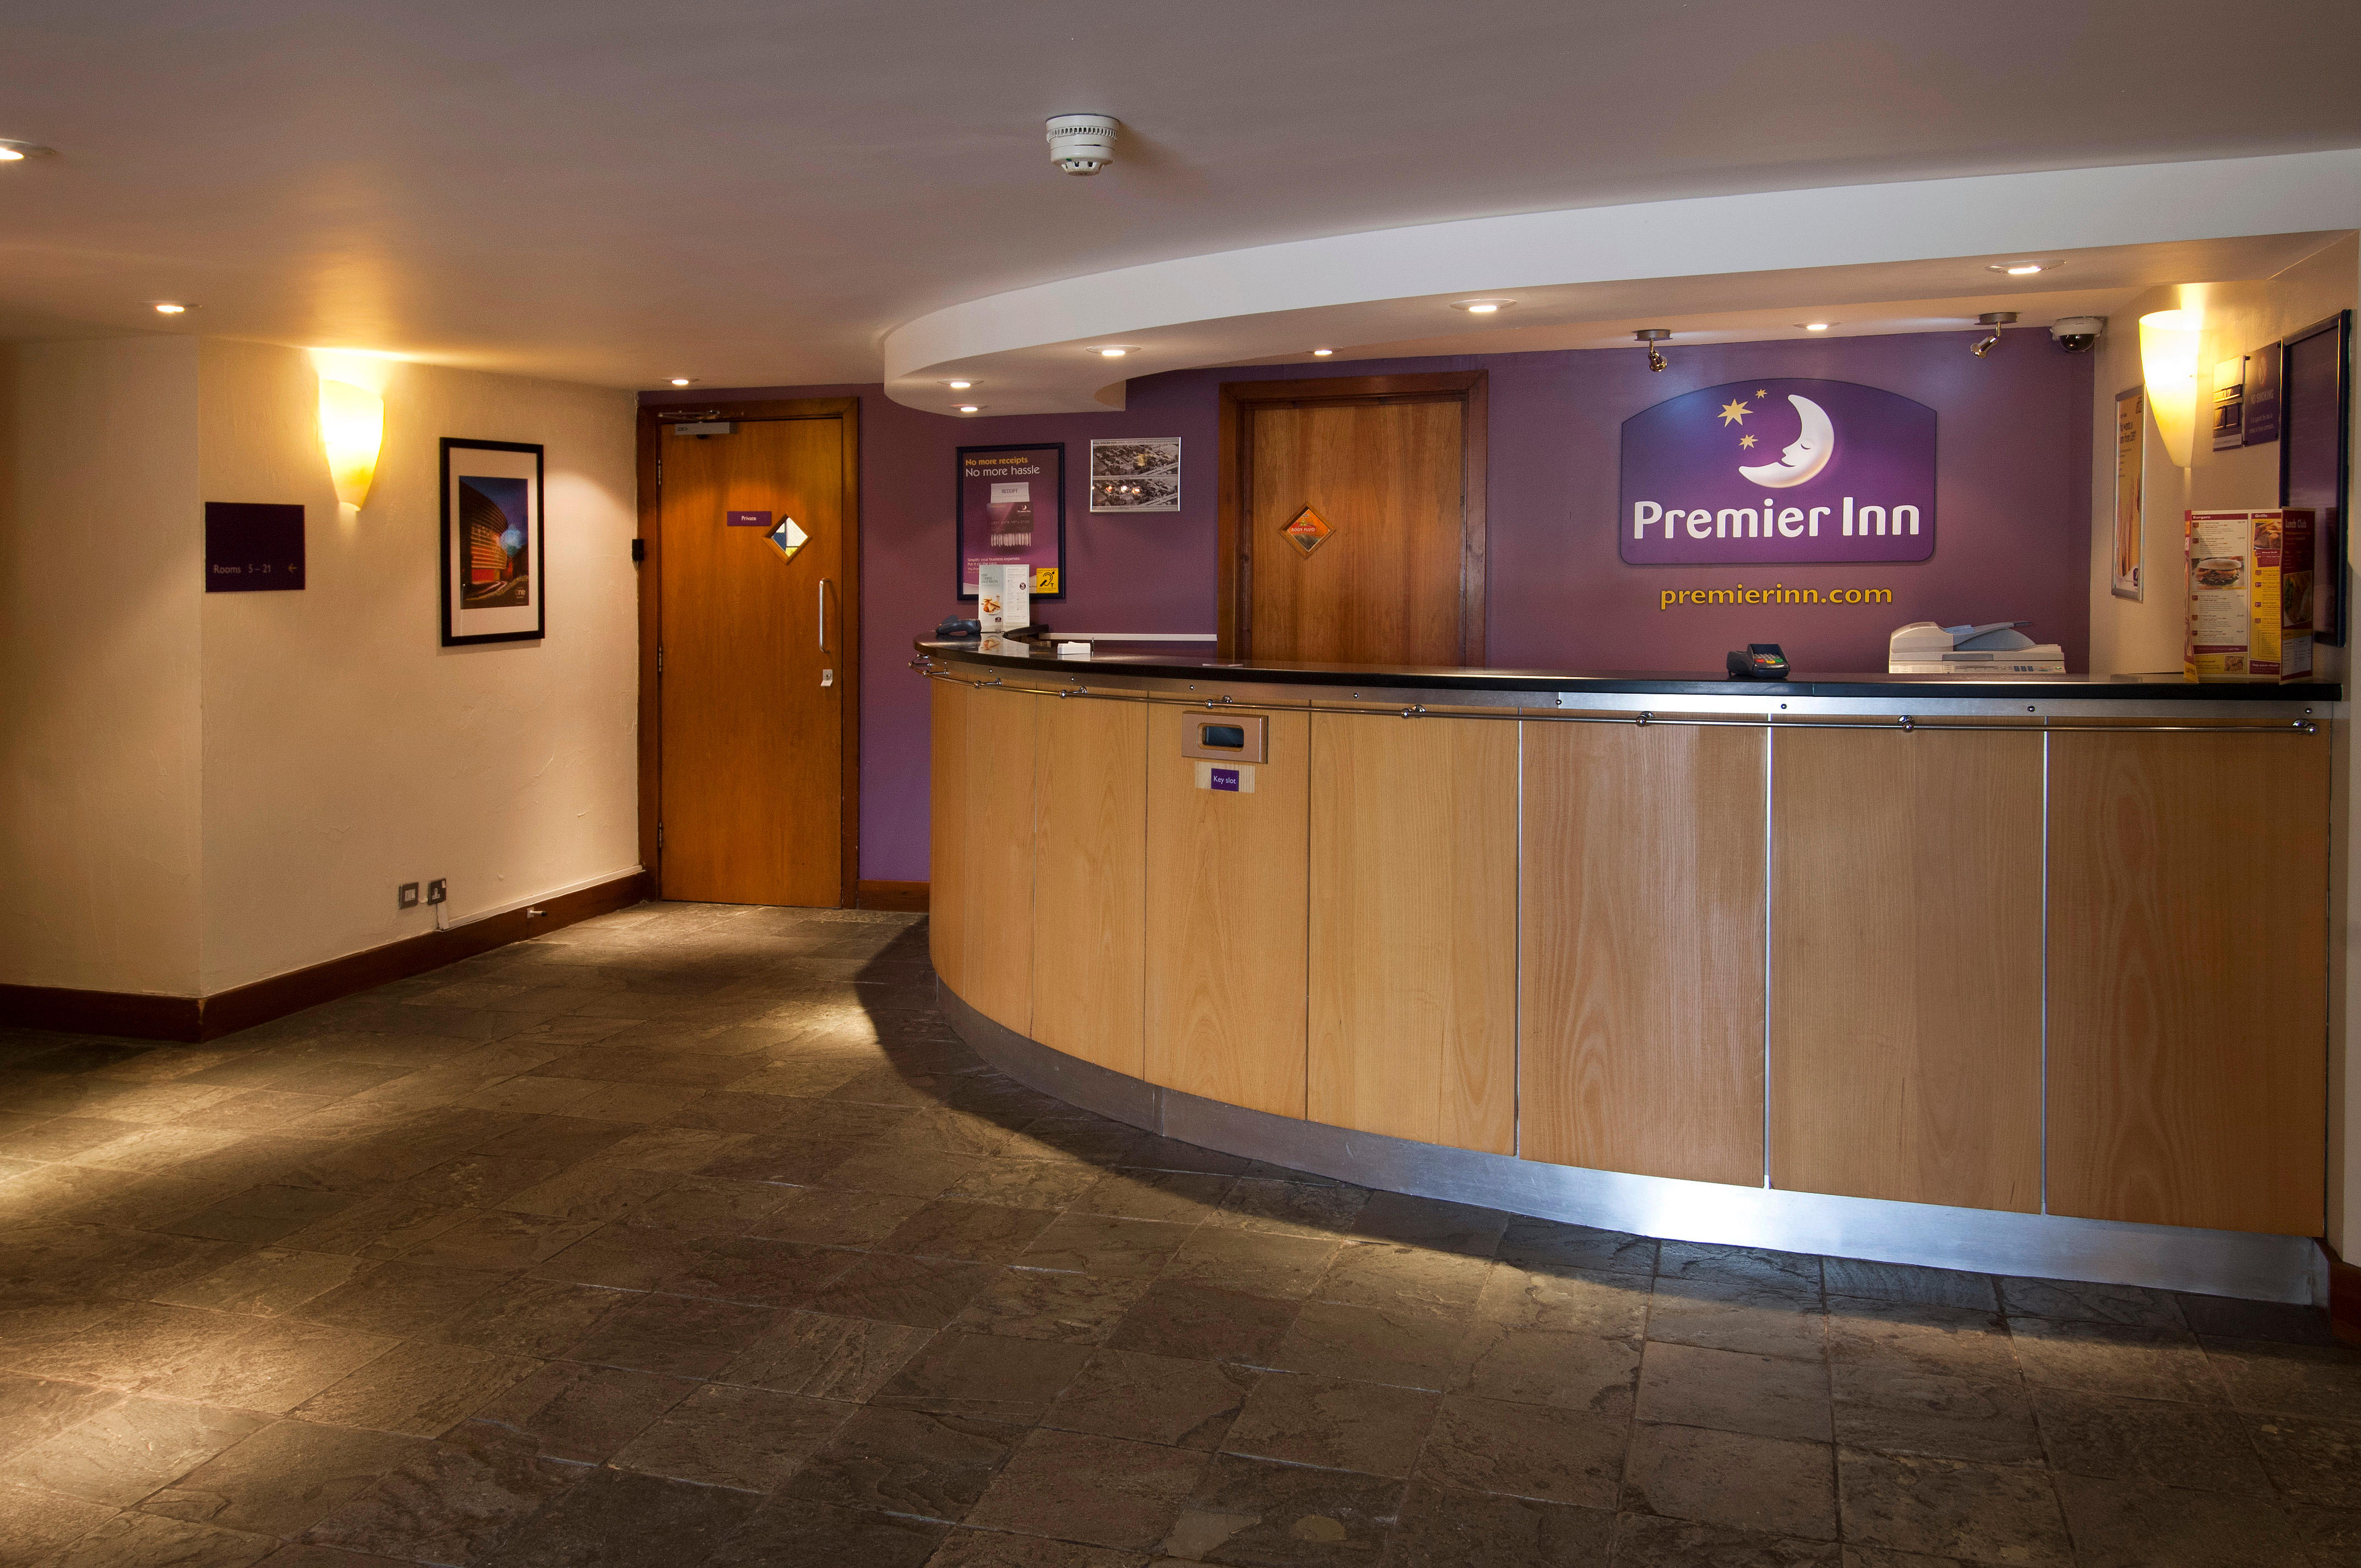 Premier Inn reception Premier Inn Leicester Central (A50) hotel Leicester 03330 037691